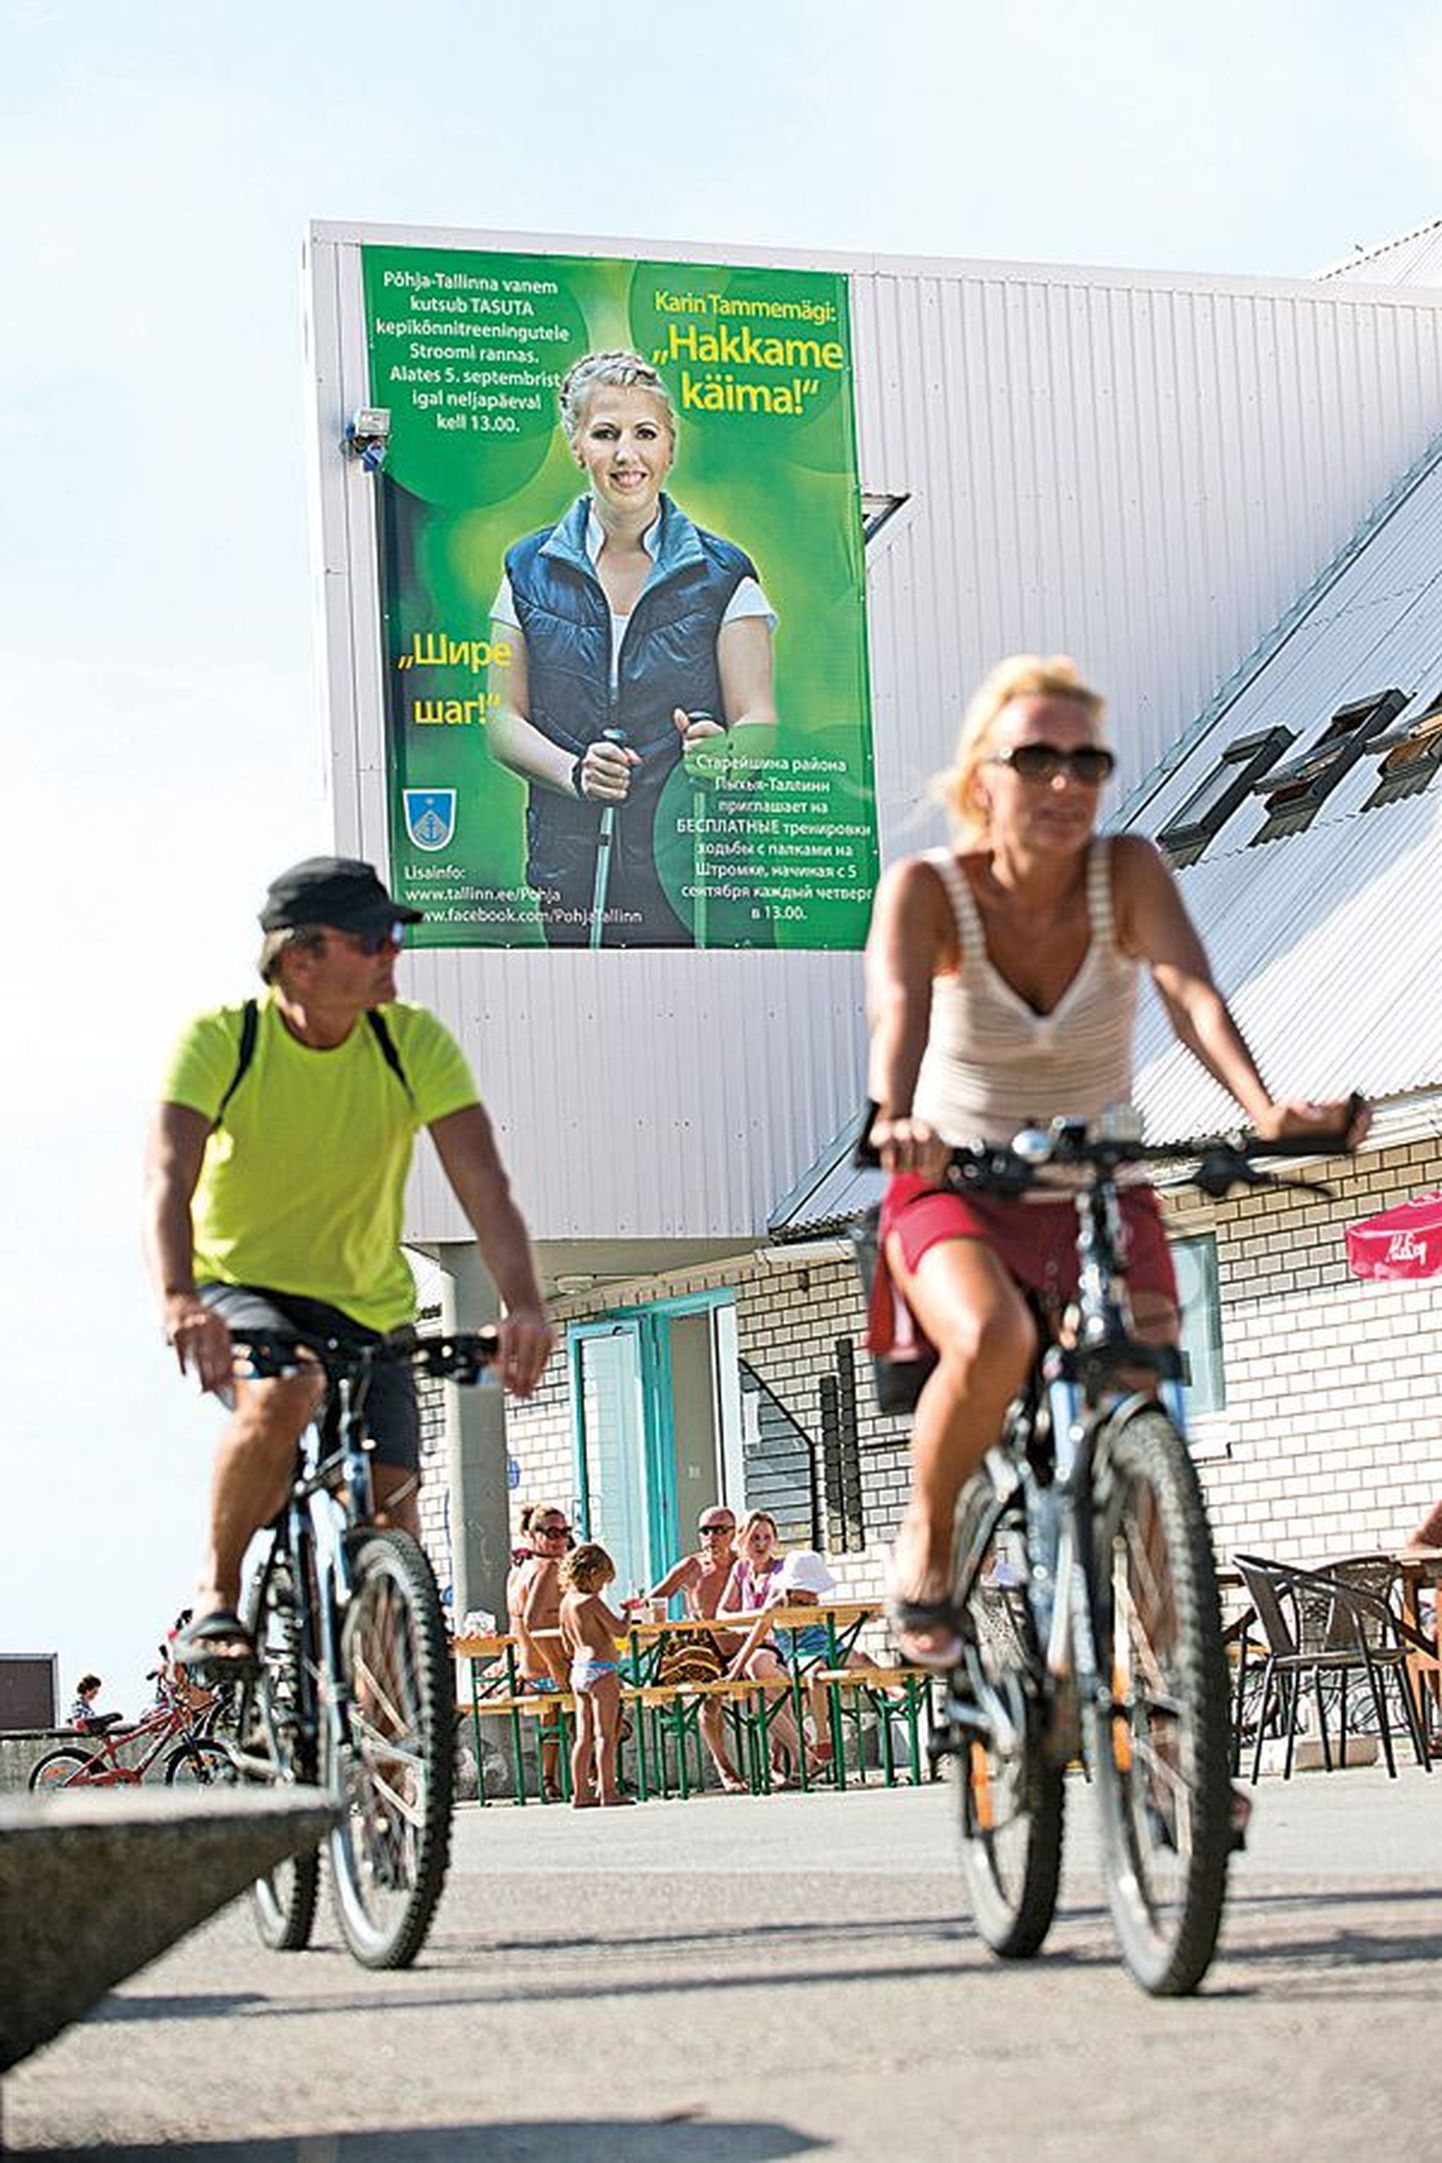 Tammemäe kepikõnnikampaania reklaam
Stroomi ranna hoonel.